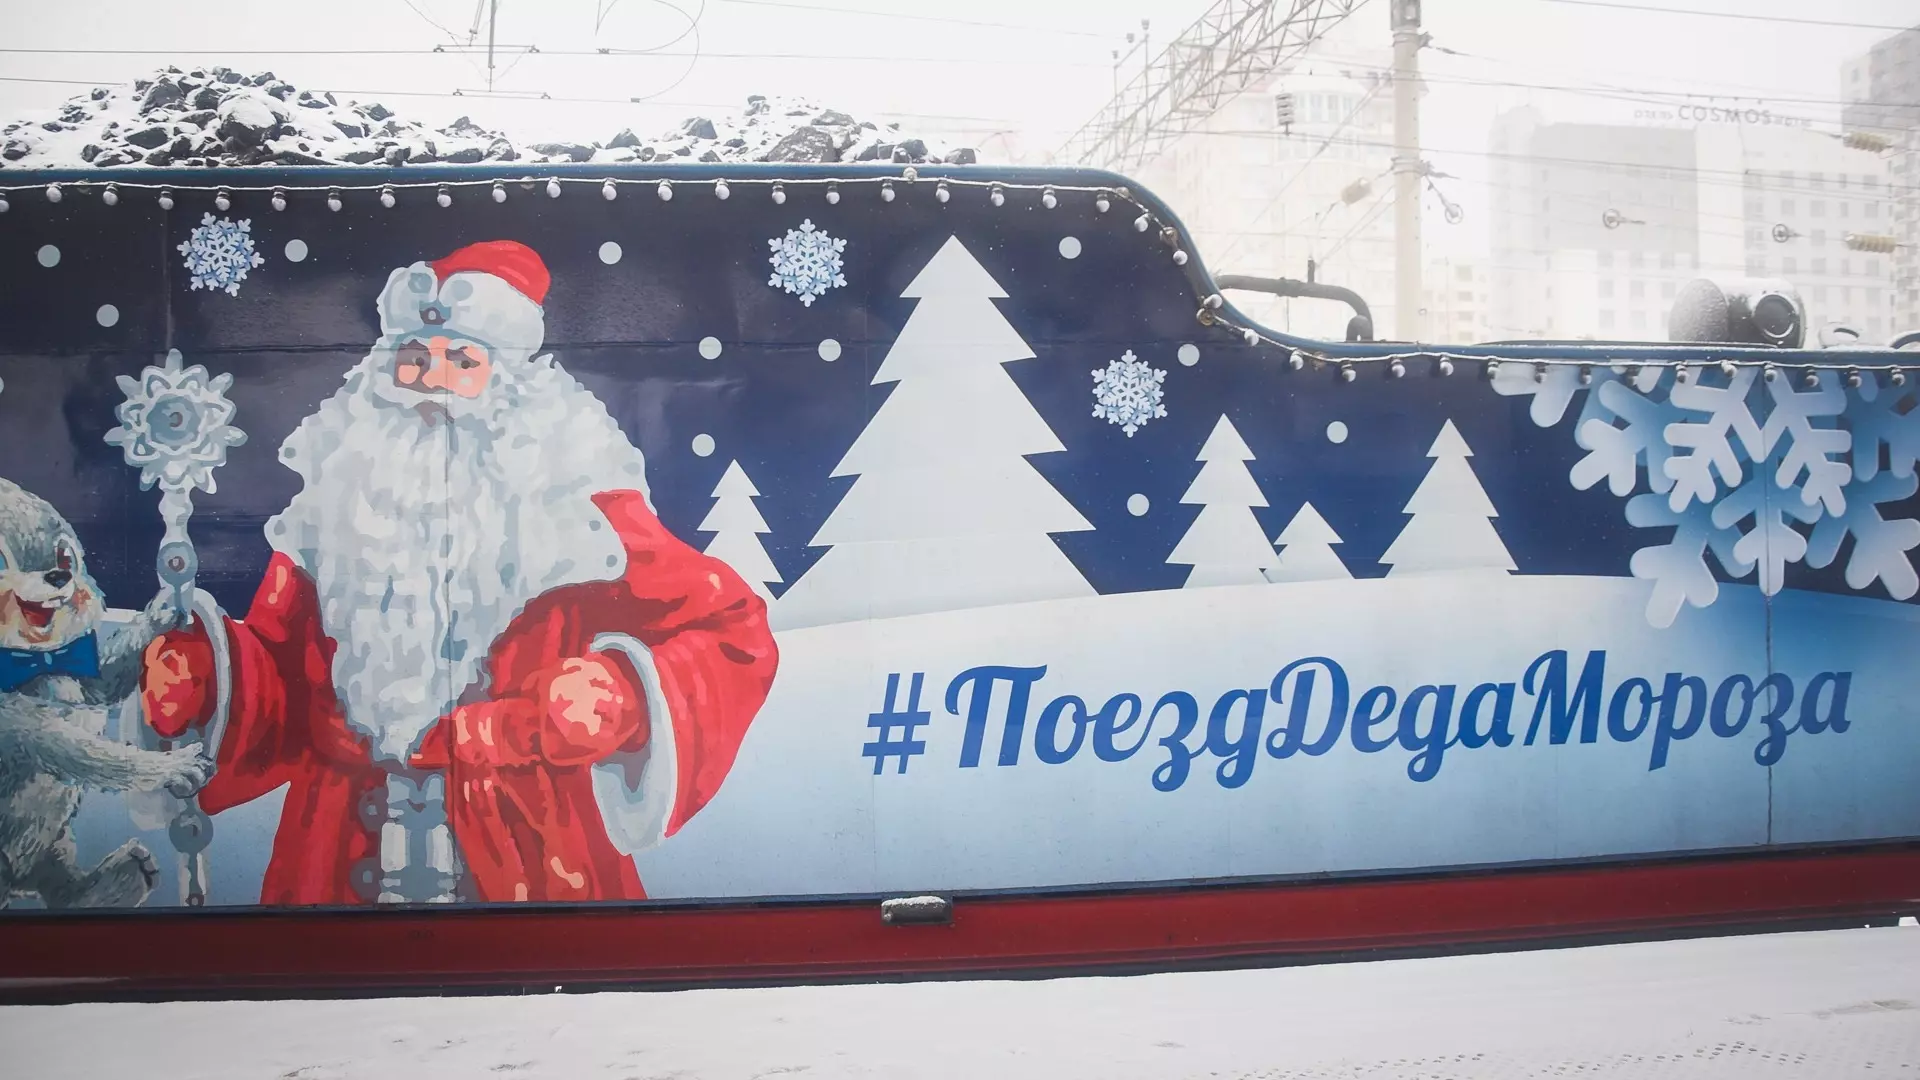 Билеты на поезд Деда Мороза в Башкирии раскуплены за сутки